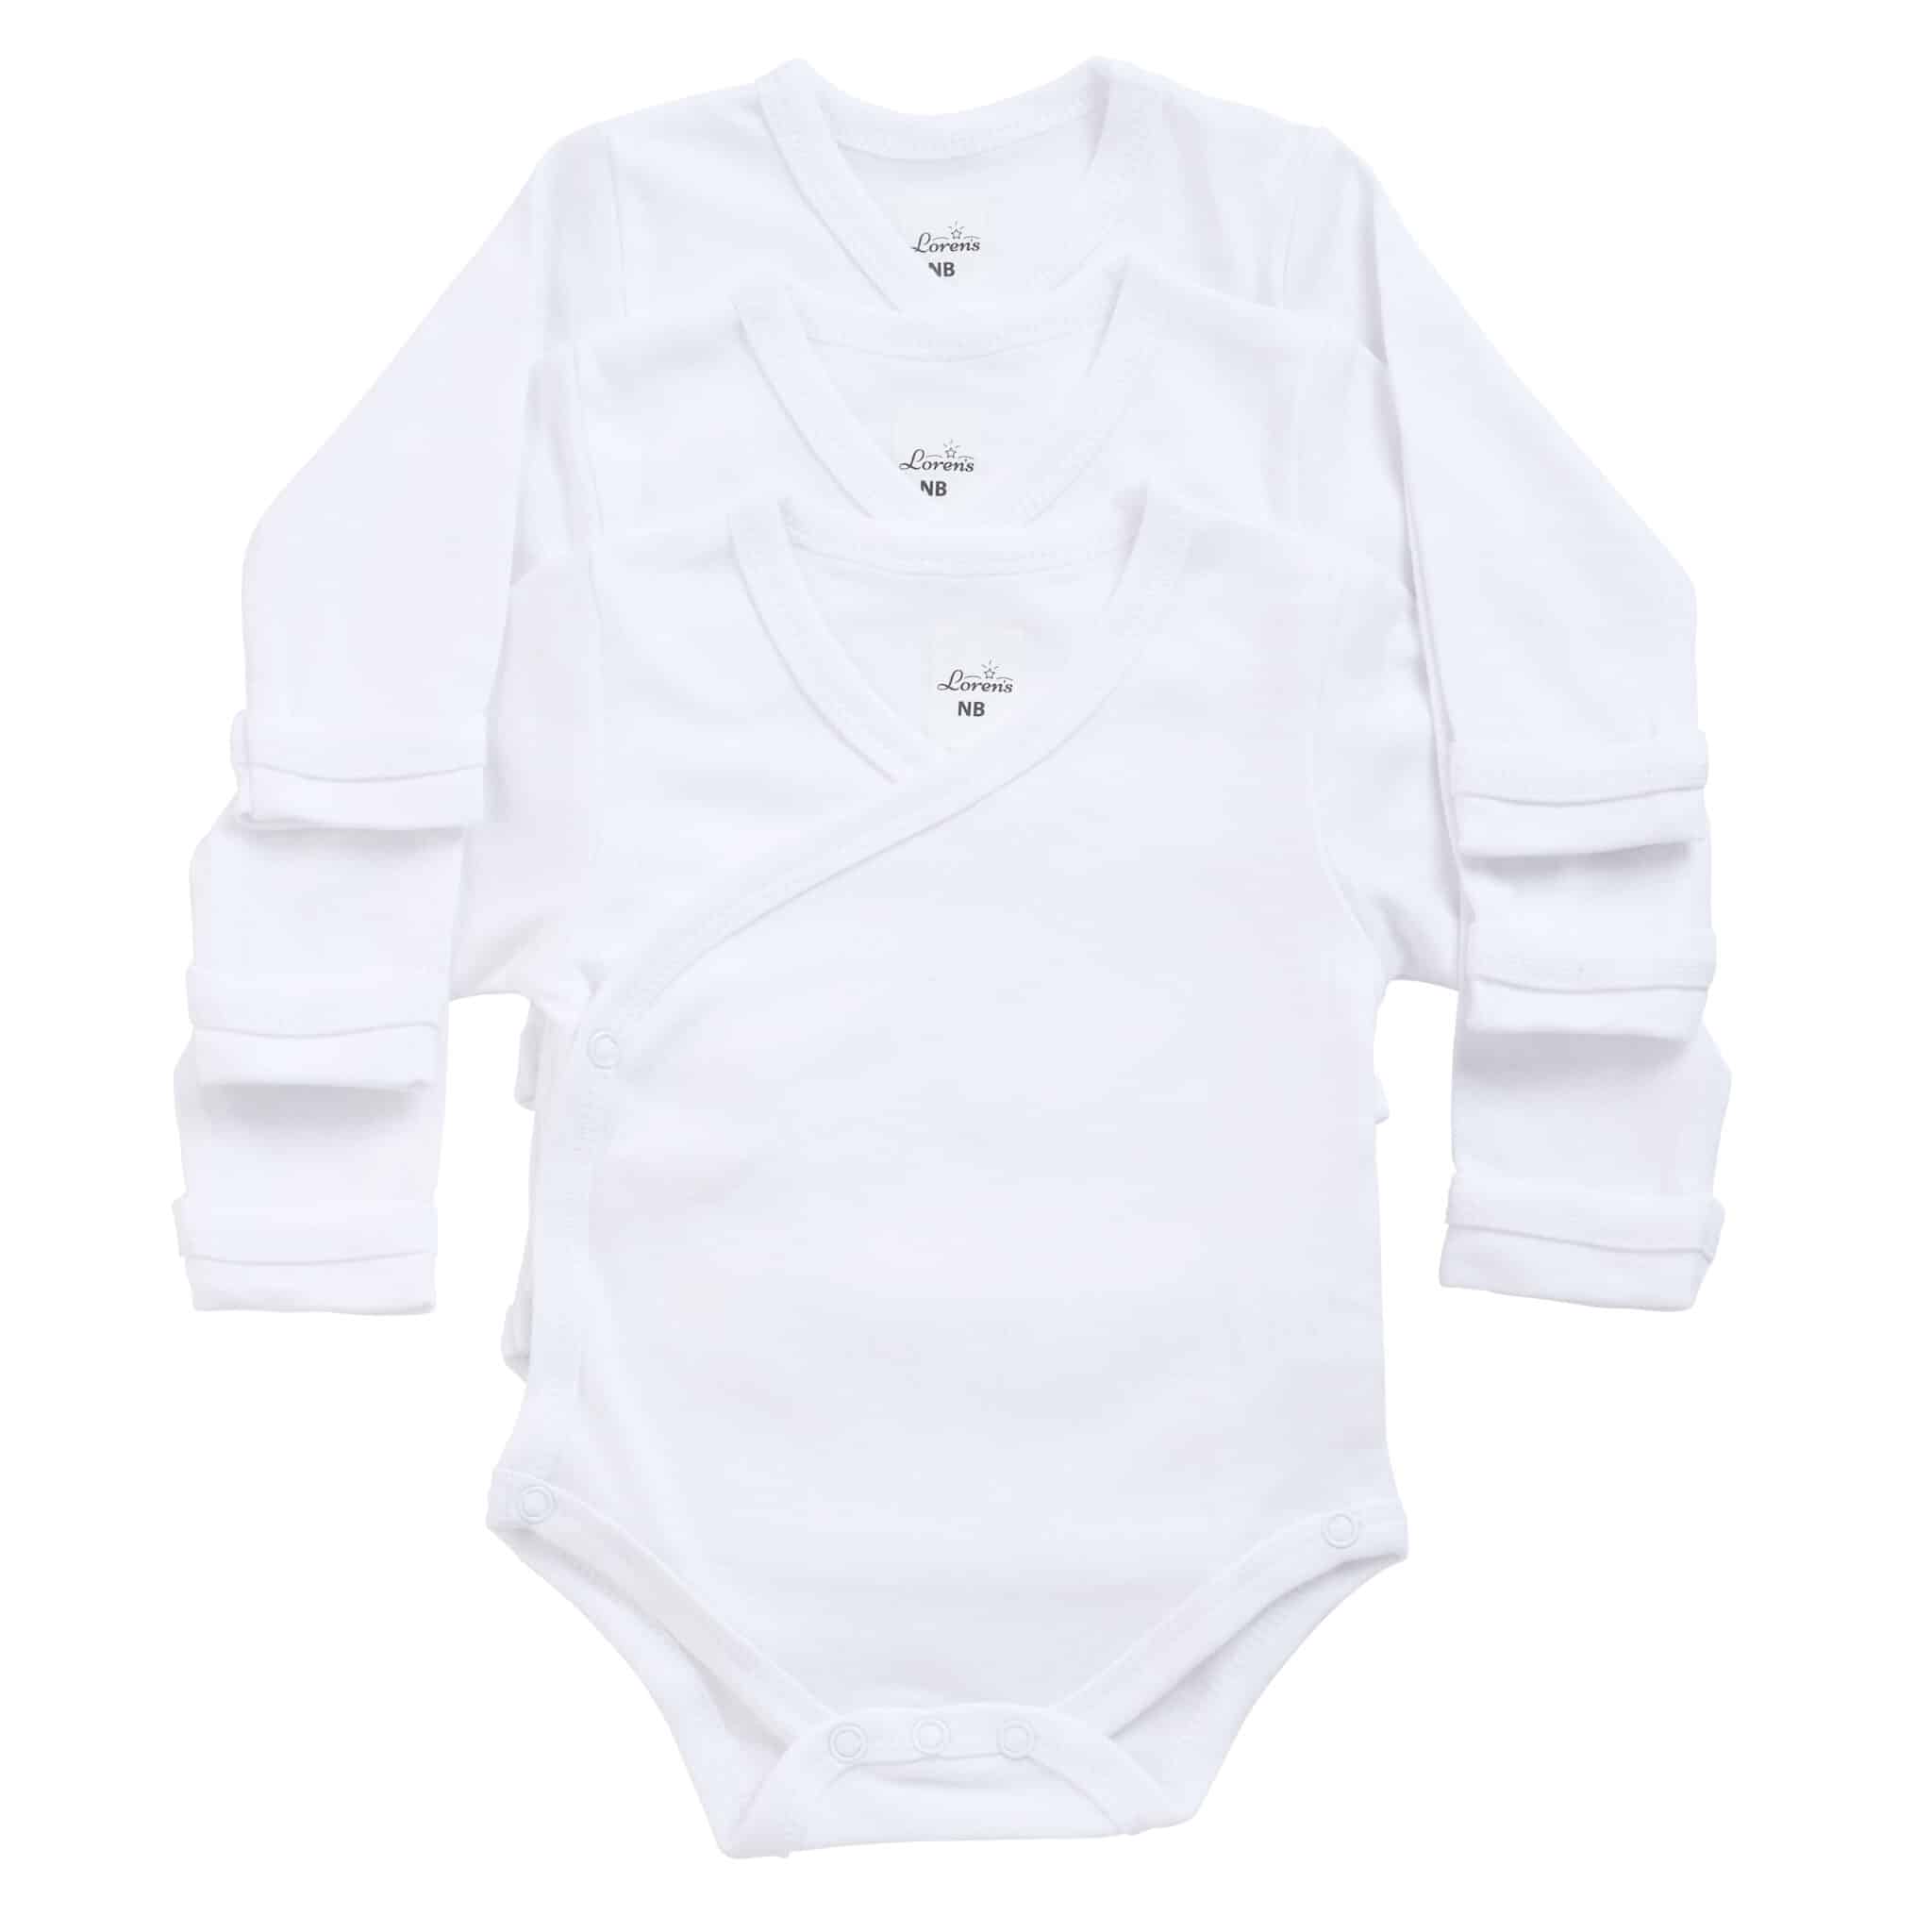 3 בגדי גוף מעטפת לתינוק NB לבן – Lorens